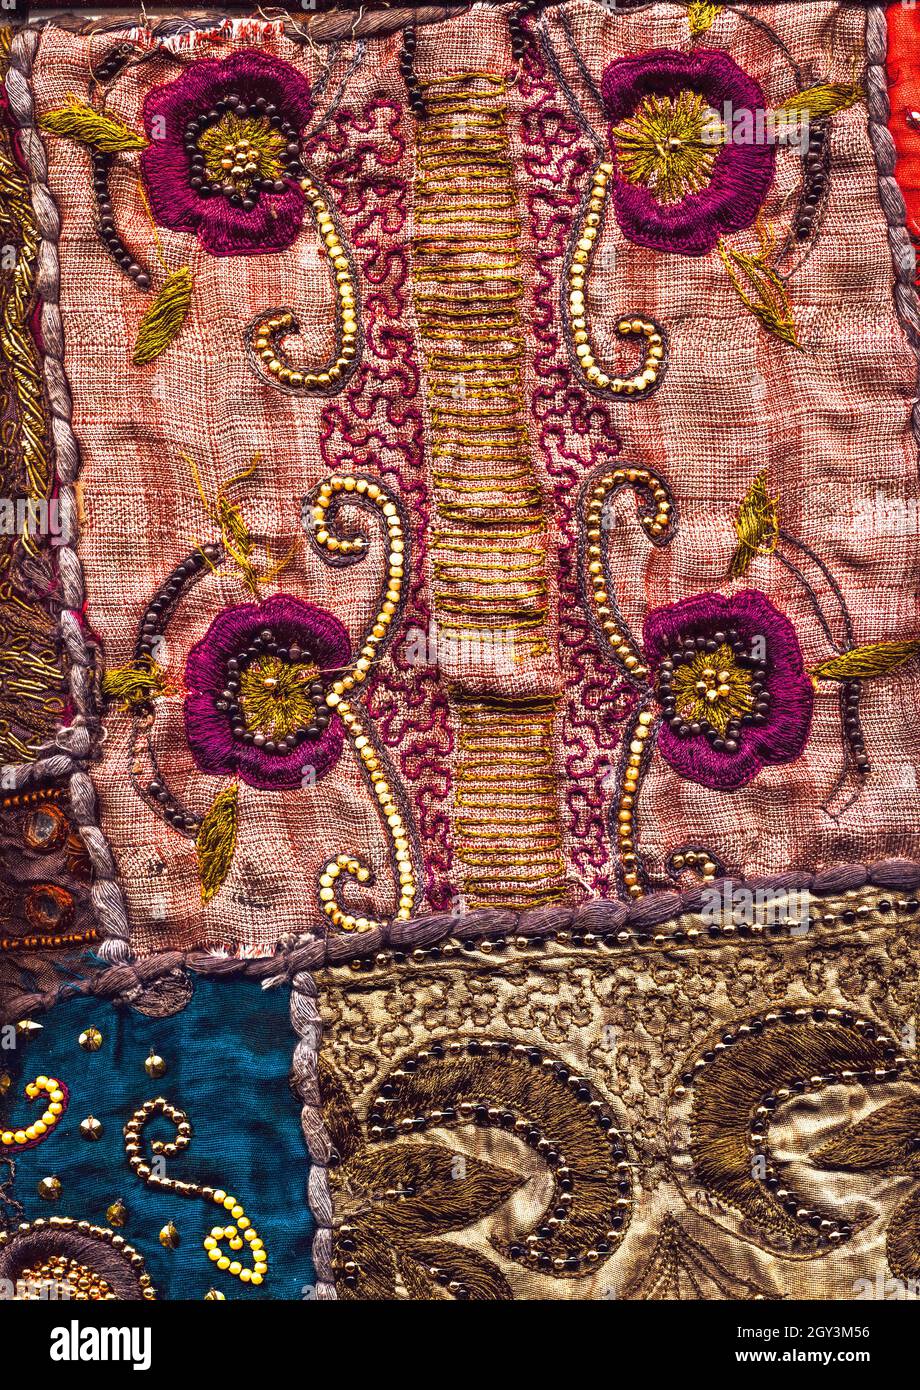 cerca de sari indio muy ornamentado y colorido Foto de stock